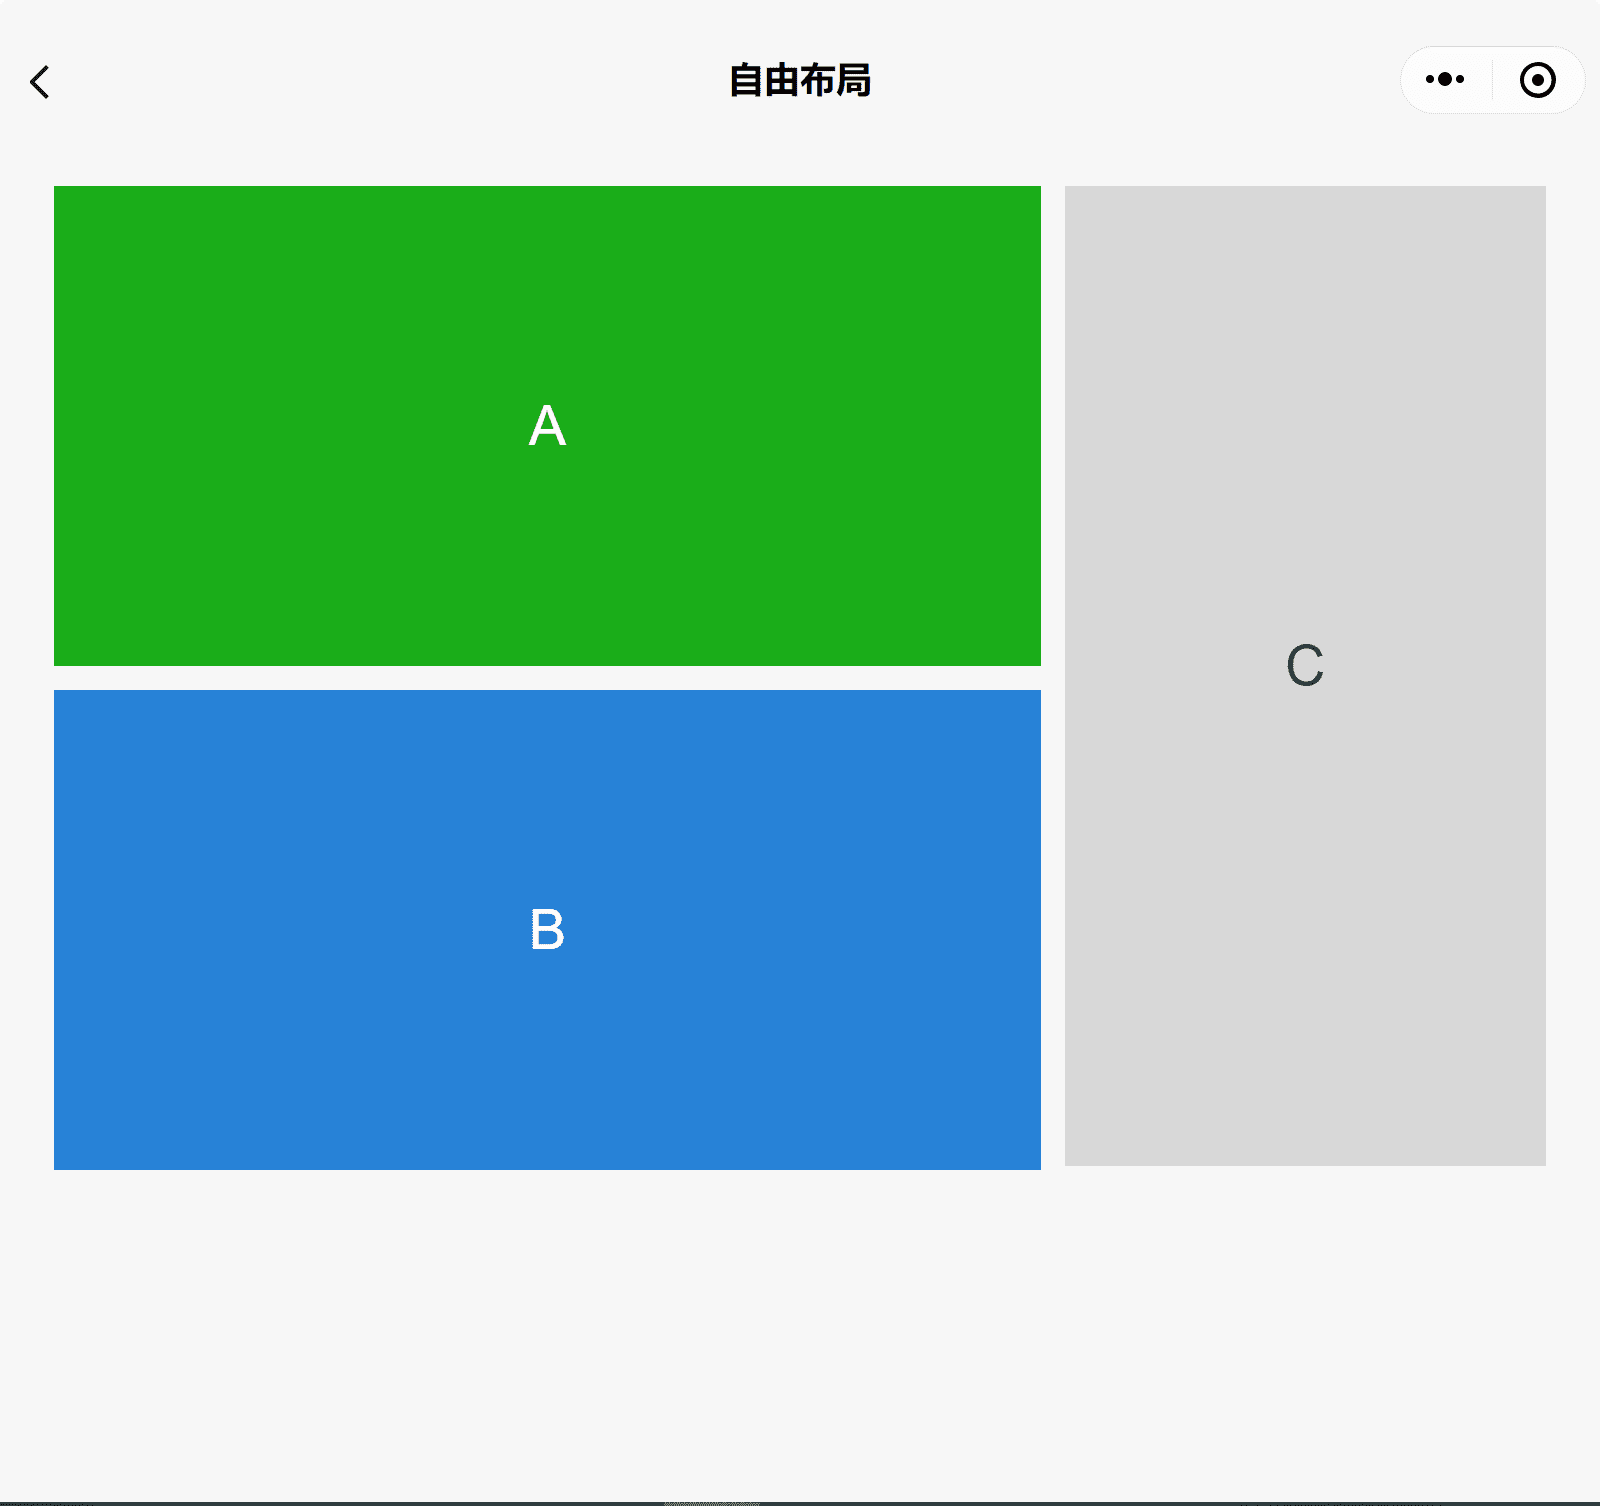 3 つのボックス A、B、C が表示された、WeChat コンポーネントのデモアプリ。B の上に A が、横に C が積み重ねられています。